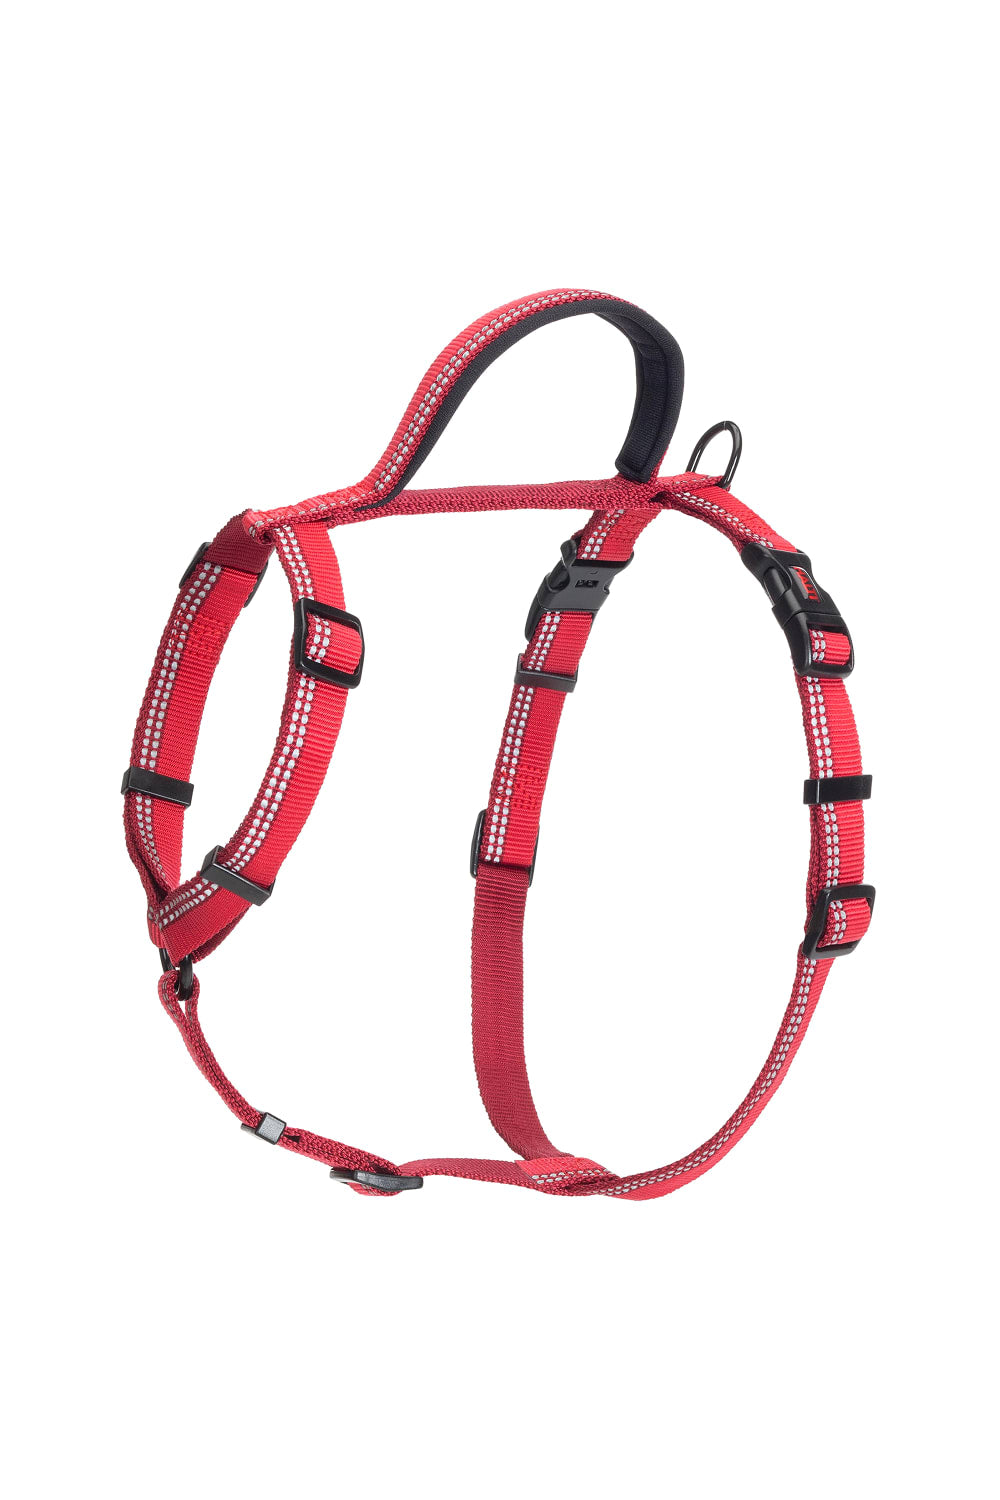 Halti Walking Harness (Red) (26-39in)